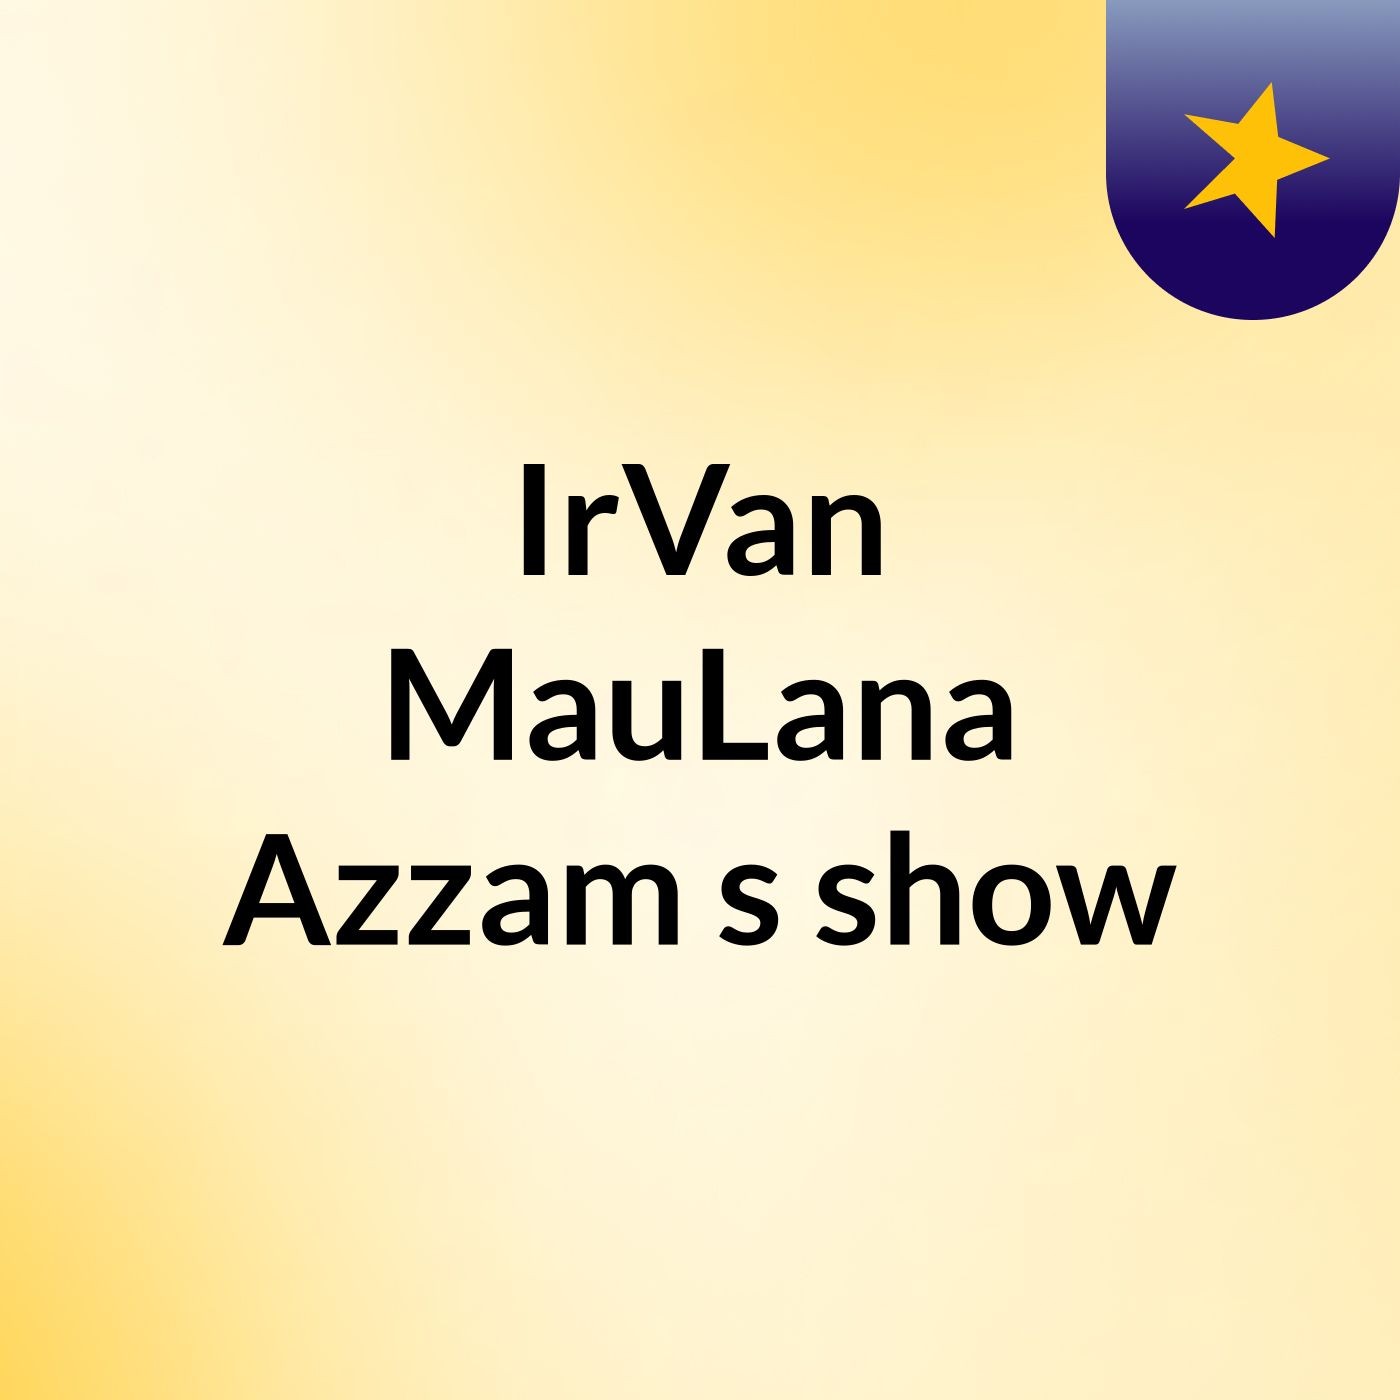 IrVan MauLana Azzam's show